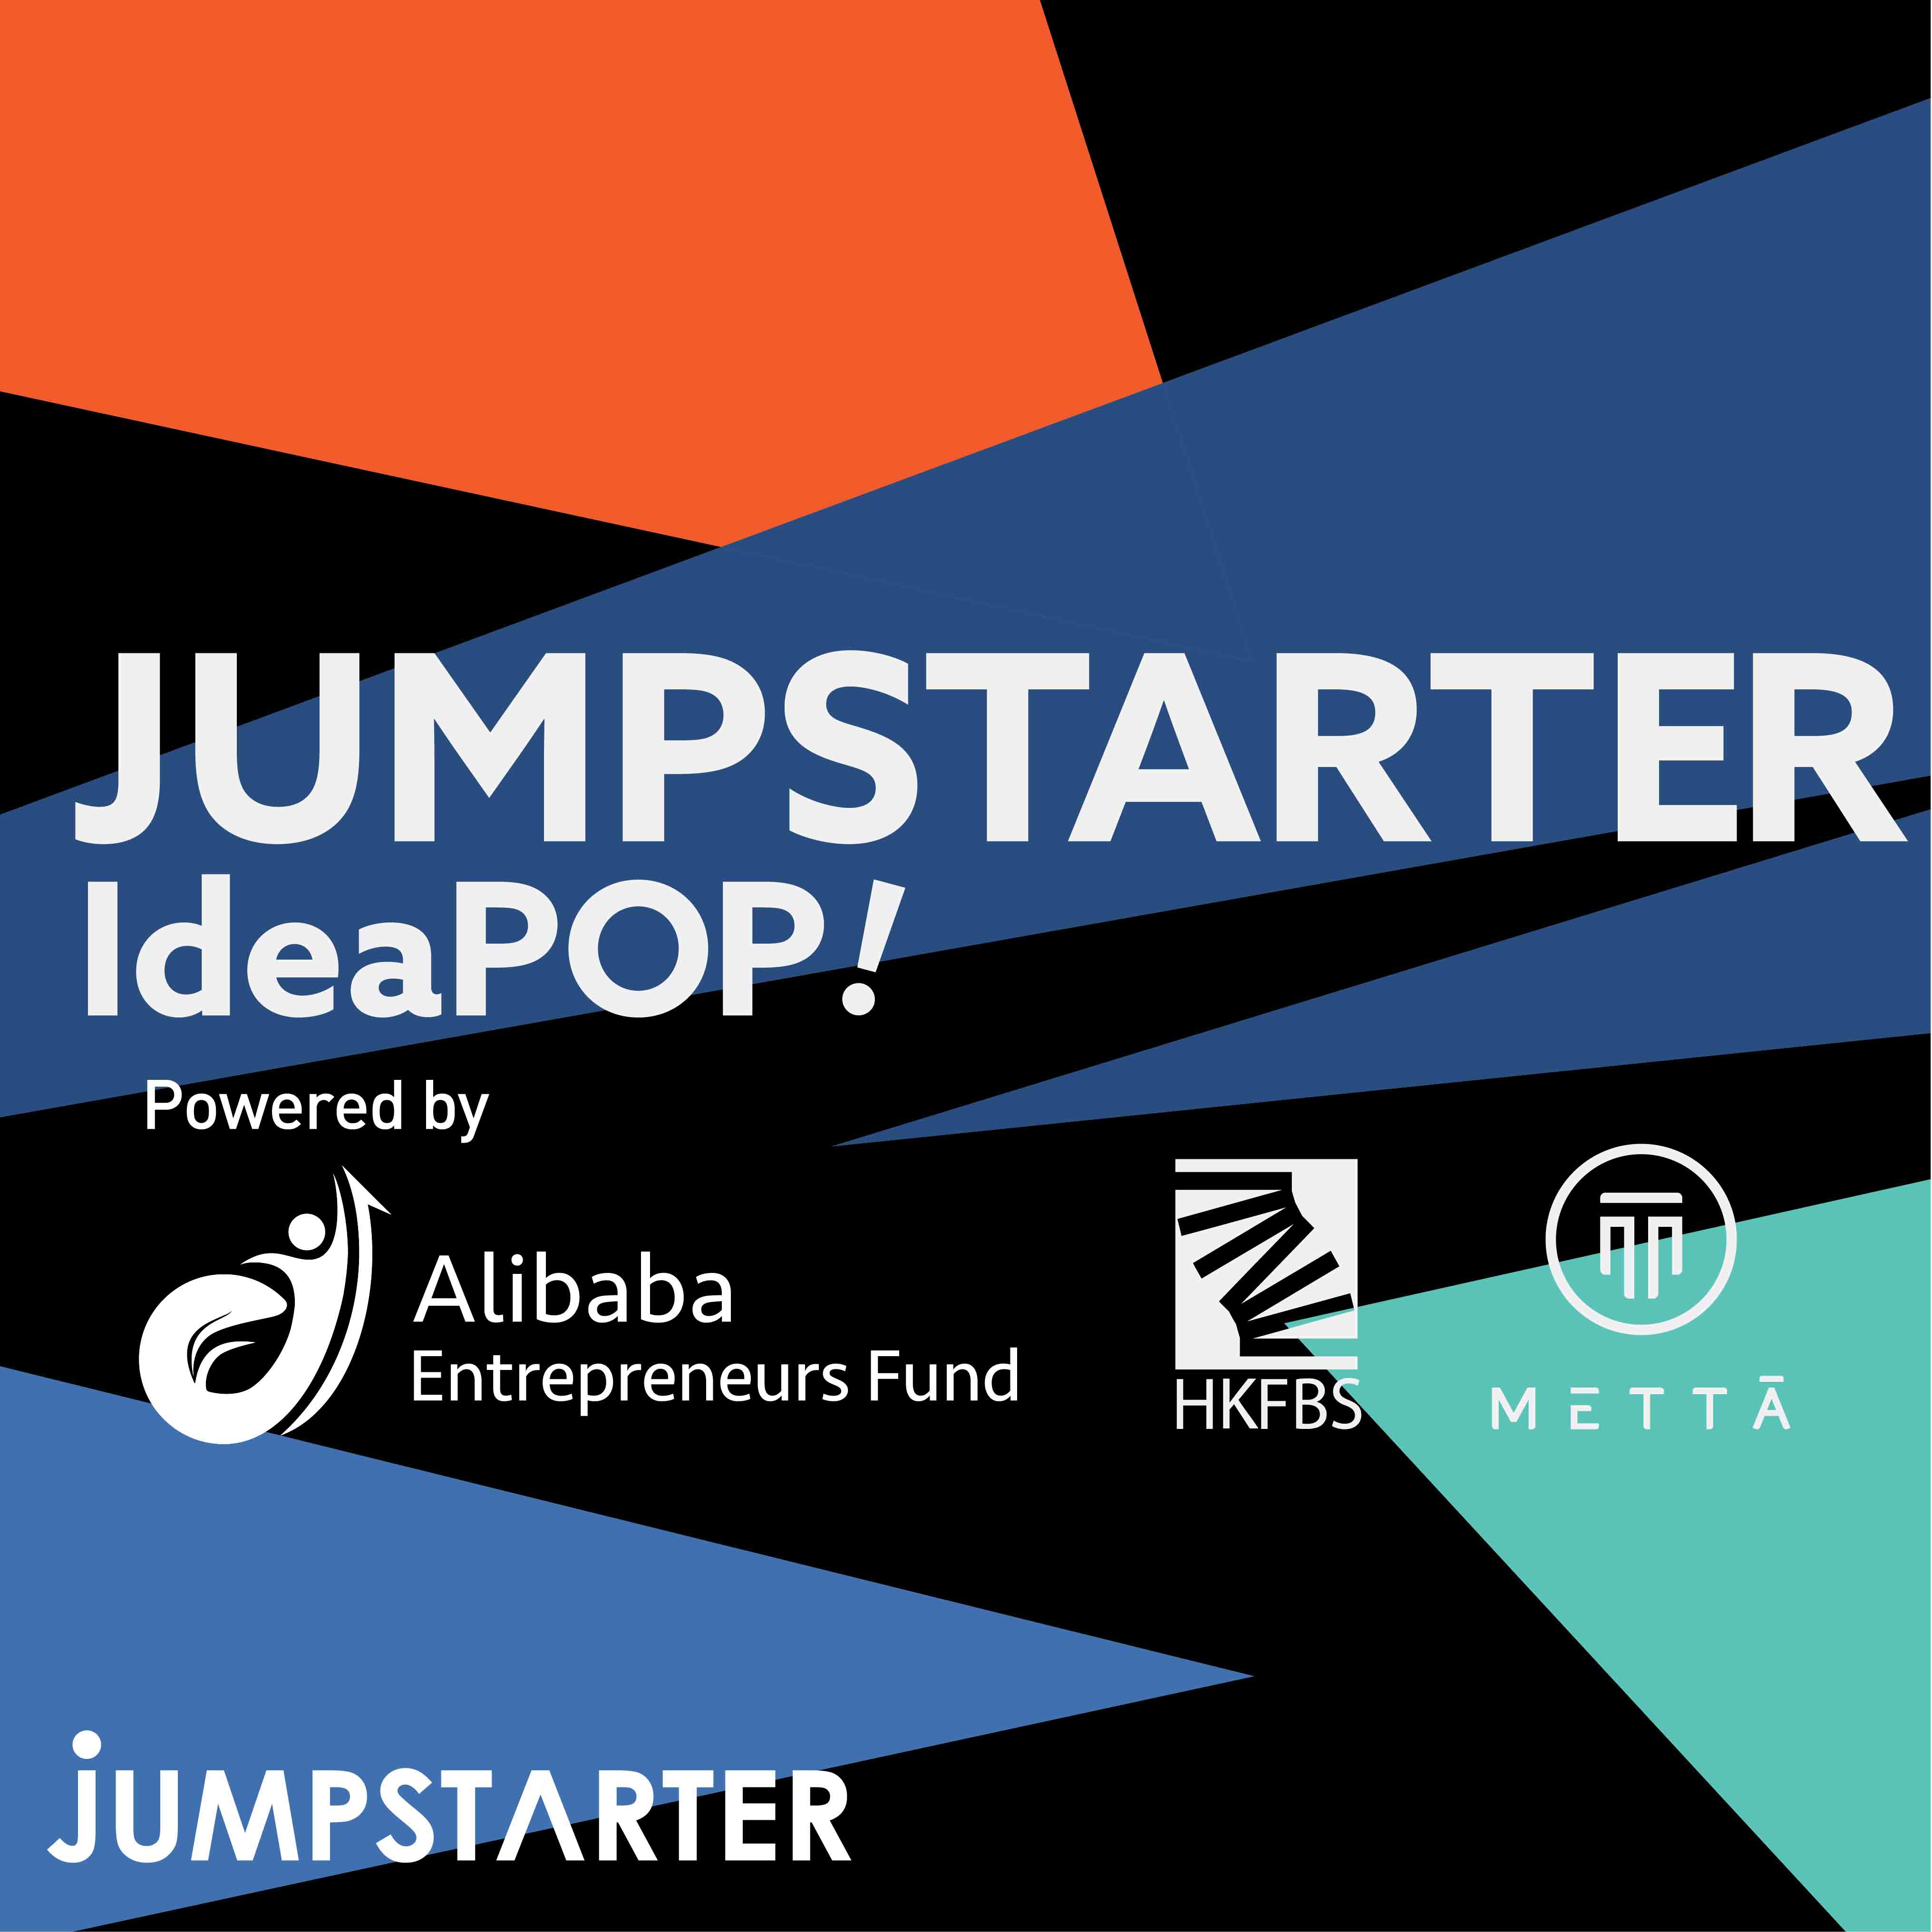 JUMPSTARTER IdeaPOP!